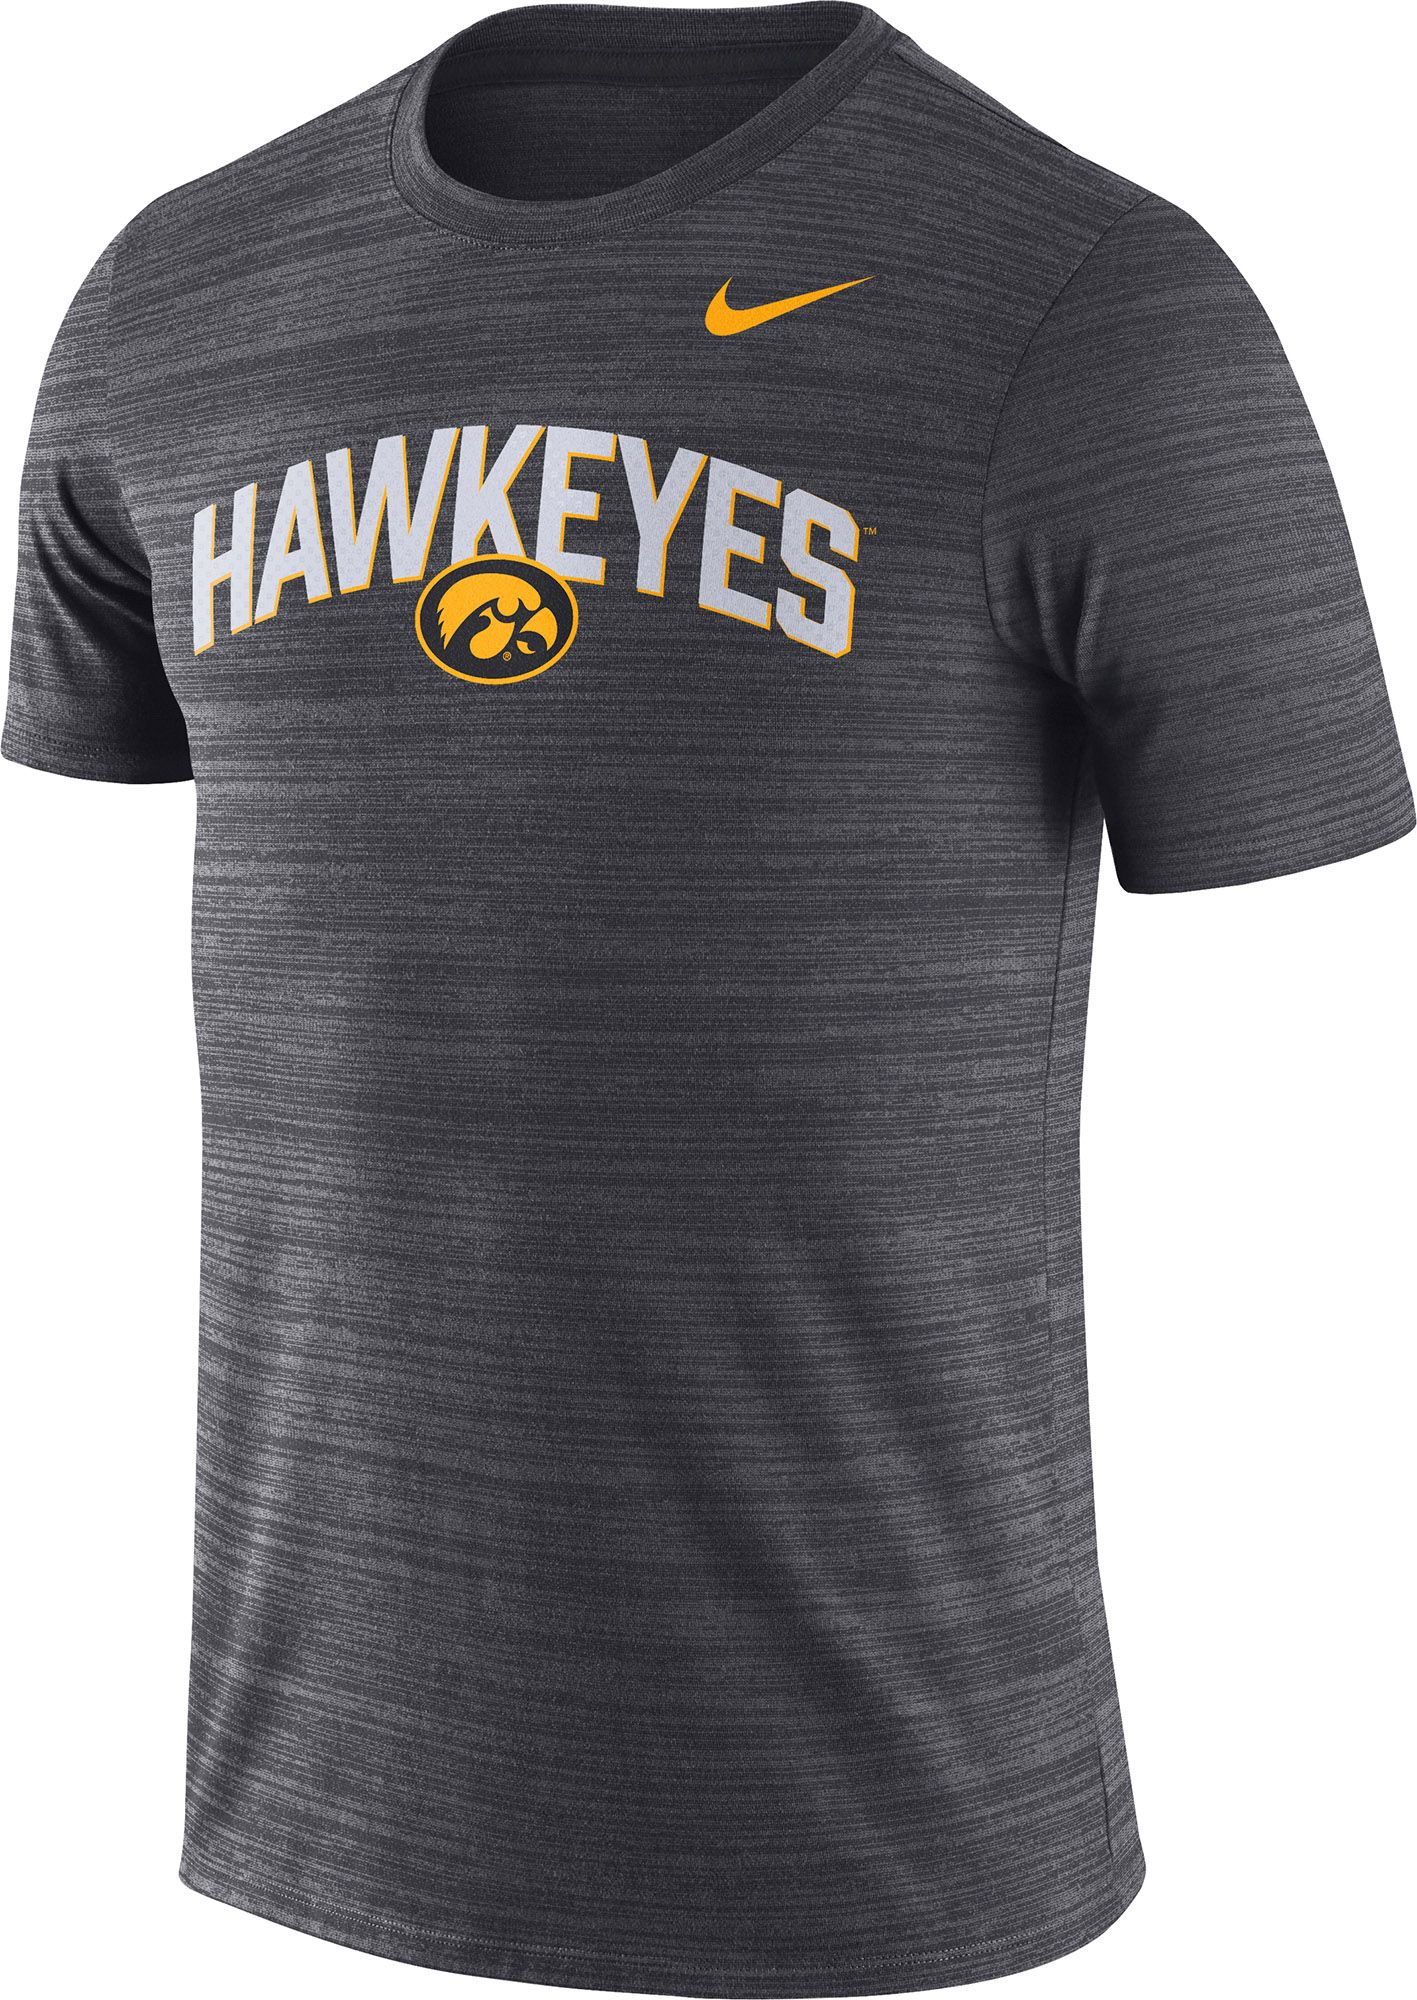 Nike Men's Iowa Hawkeyes Black Dri-FIT Velocity Football T-Shirt, XL